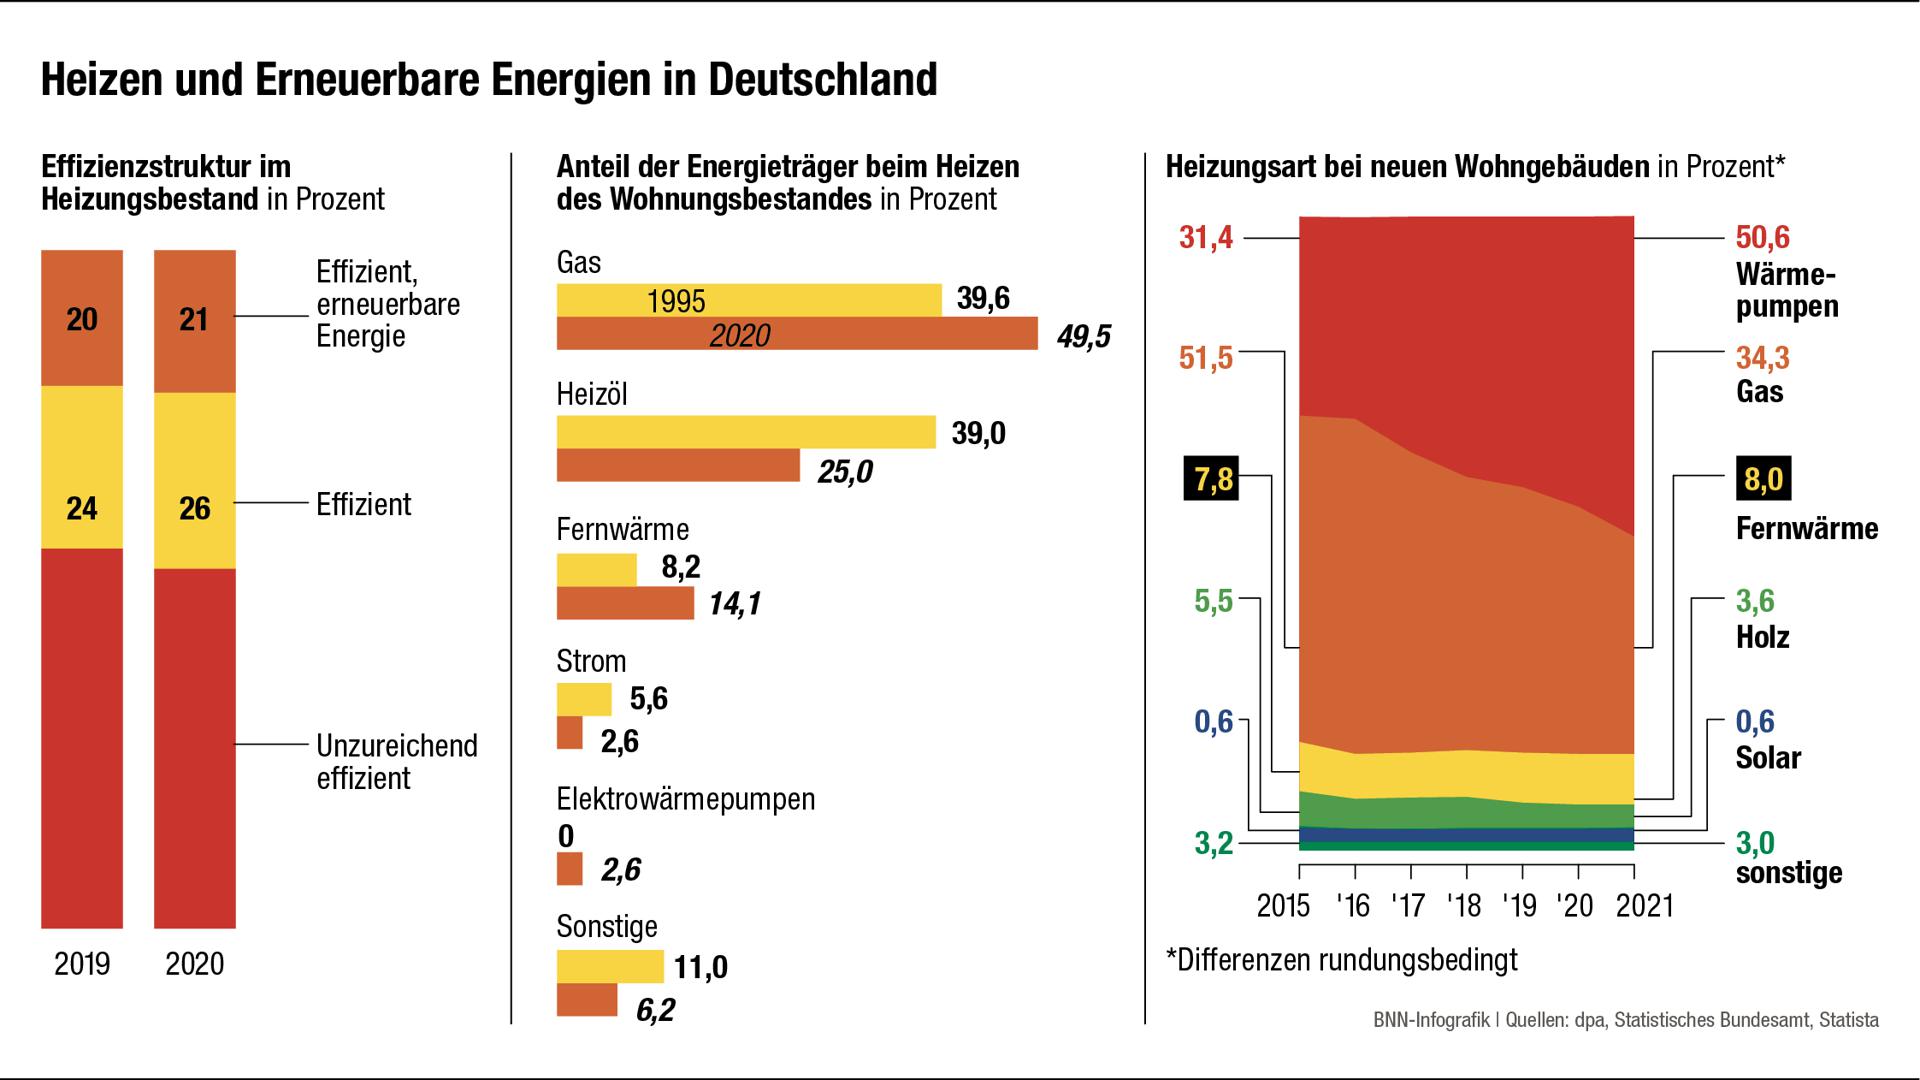 Heizen und Erneuerbare Energien in Deutschland